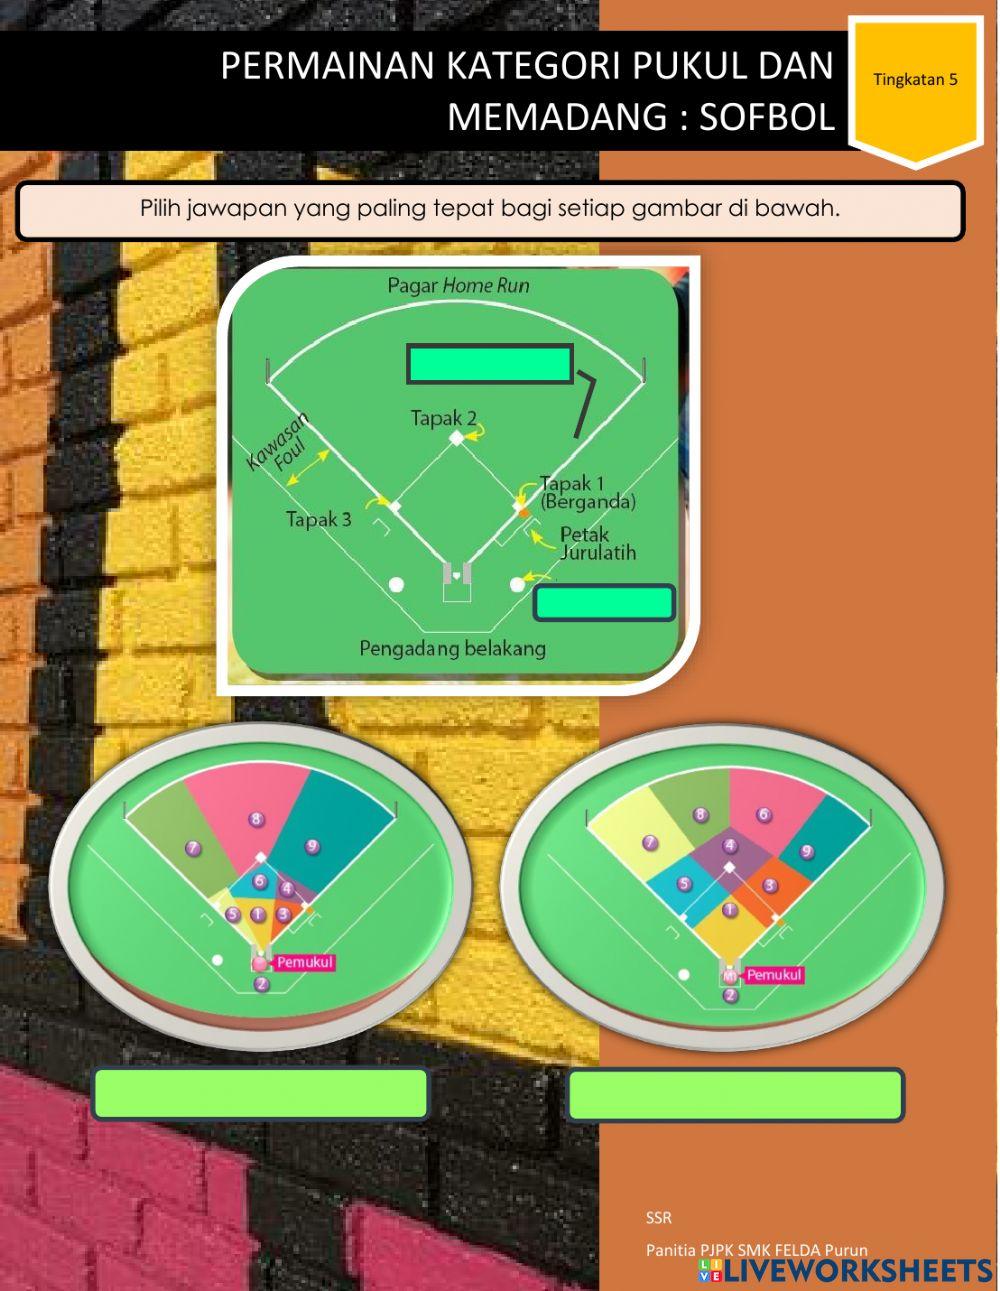 Permainan Kategori Pukul dan Memadang: Sofbol T5